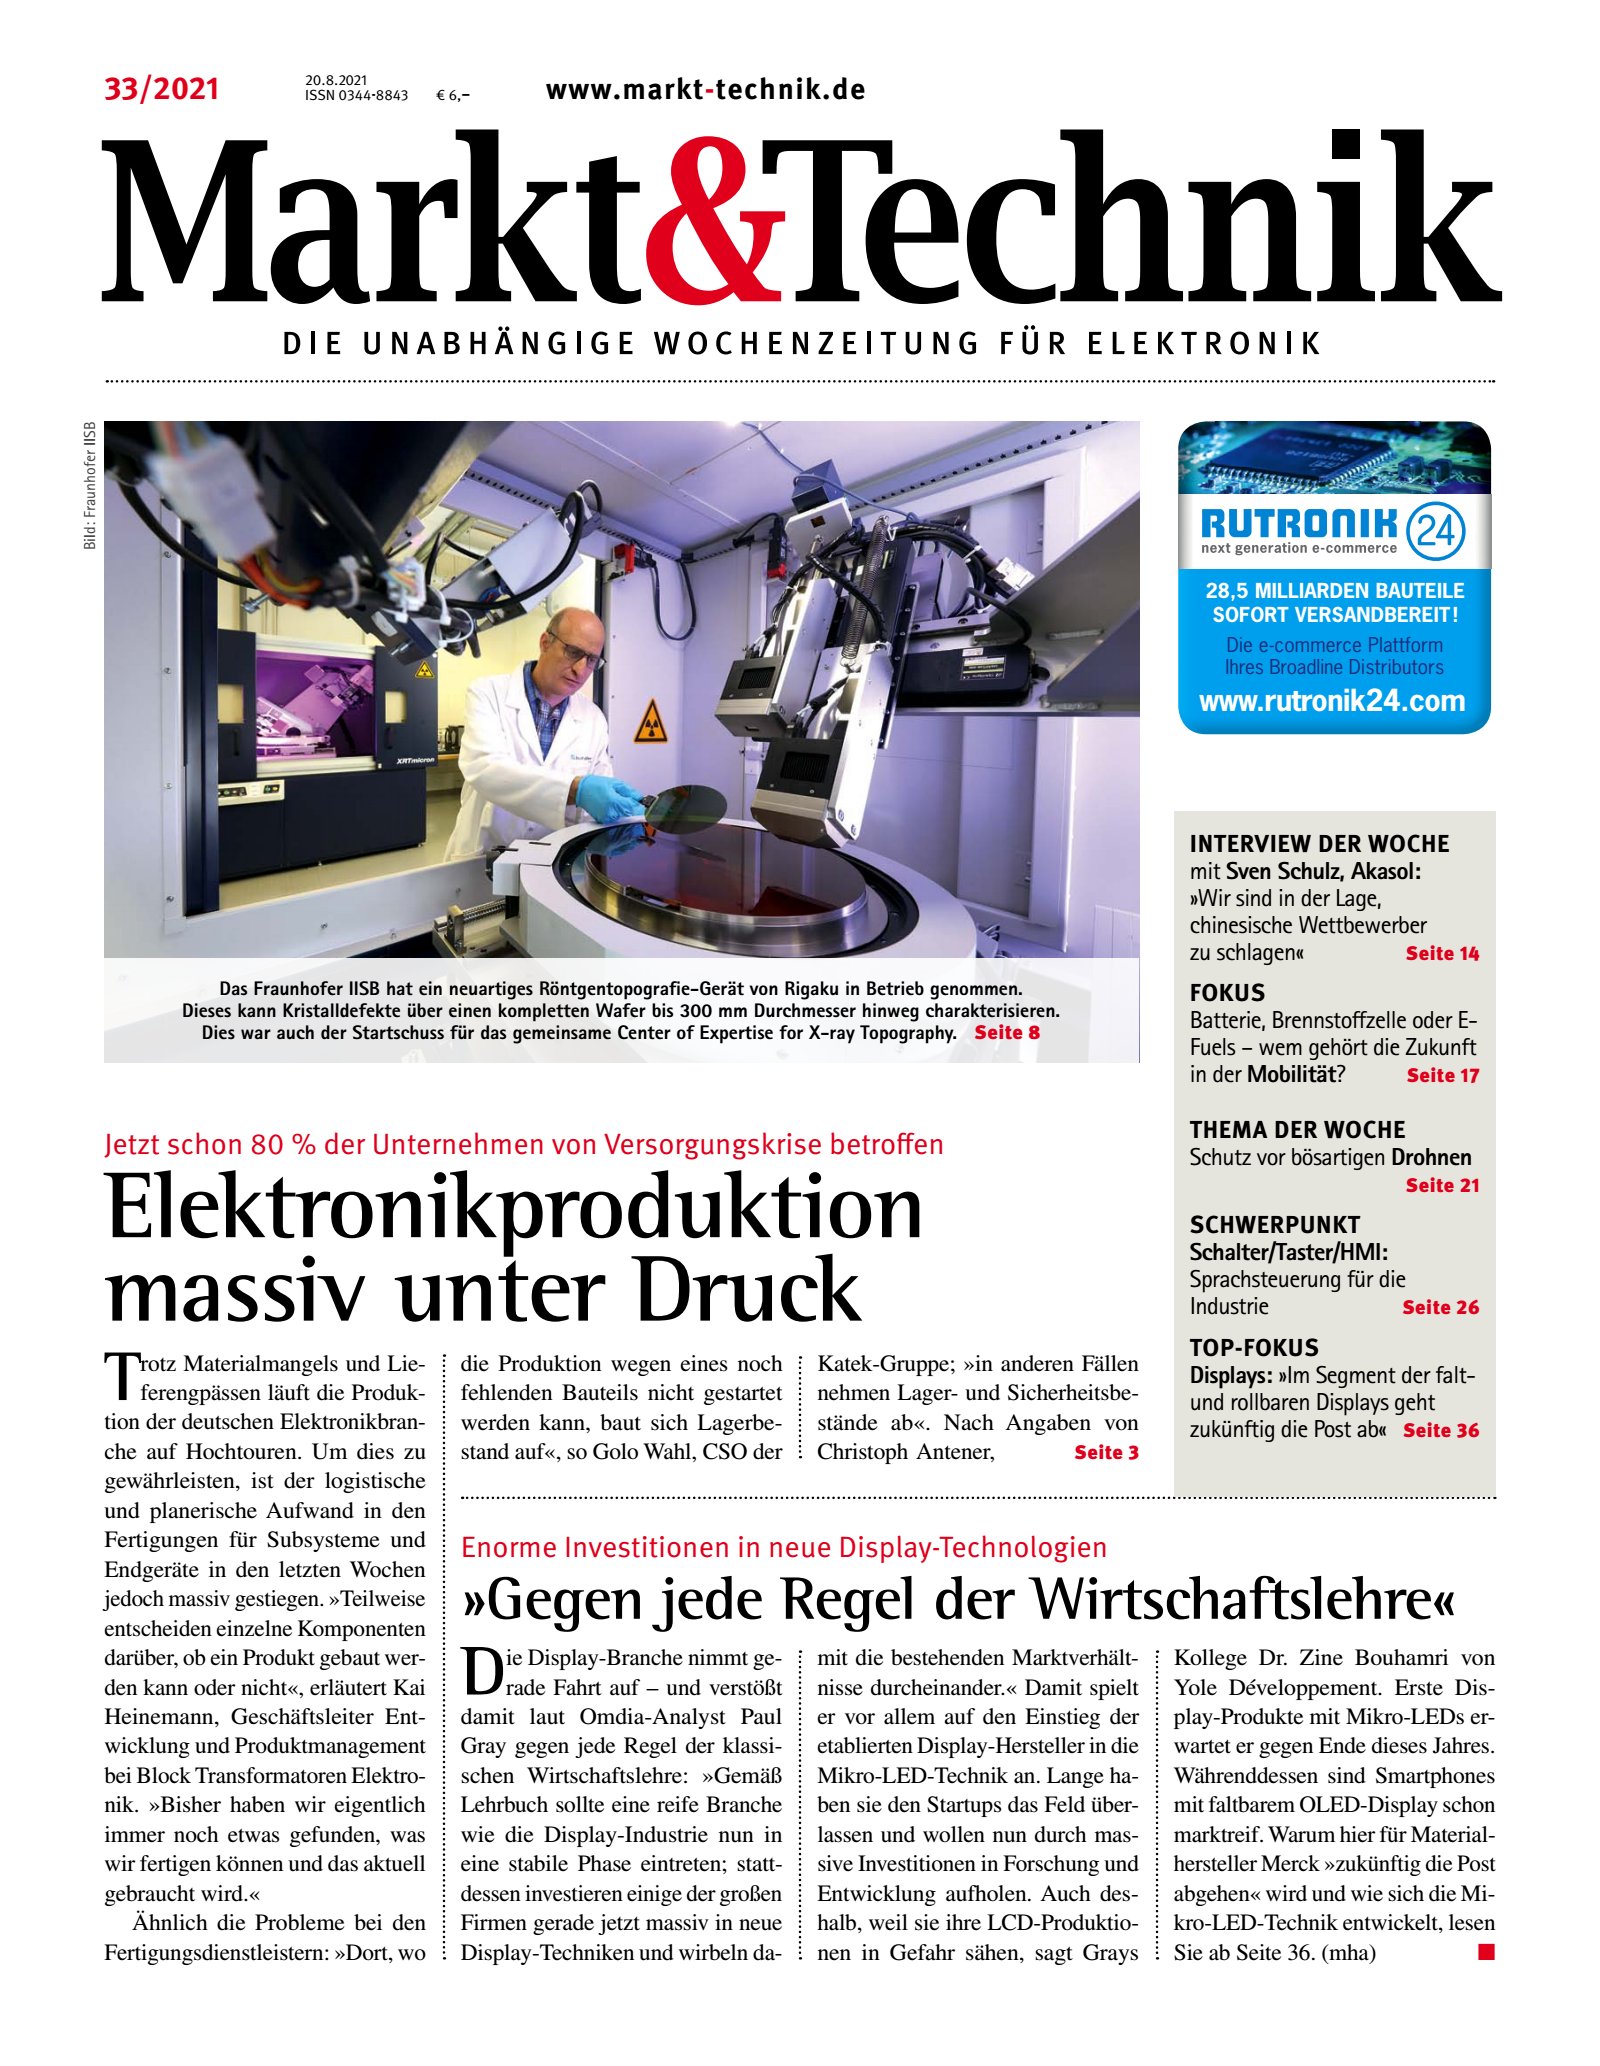 Markt&Technik 33/2021 Digital